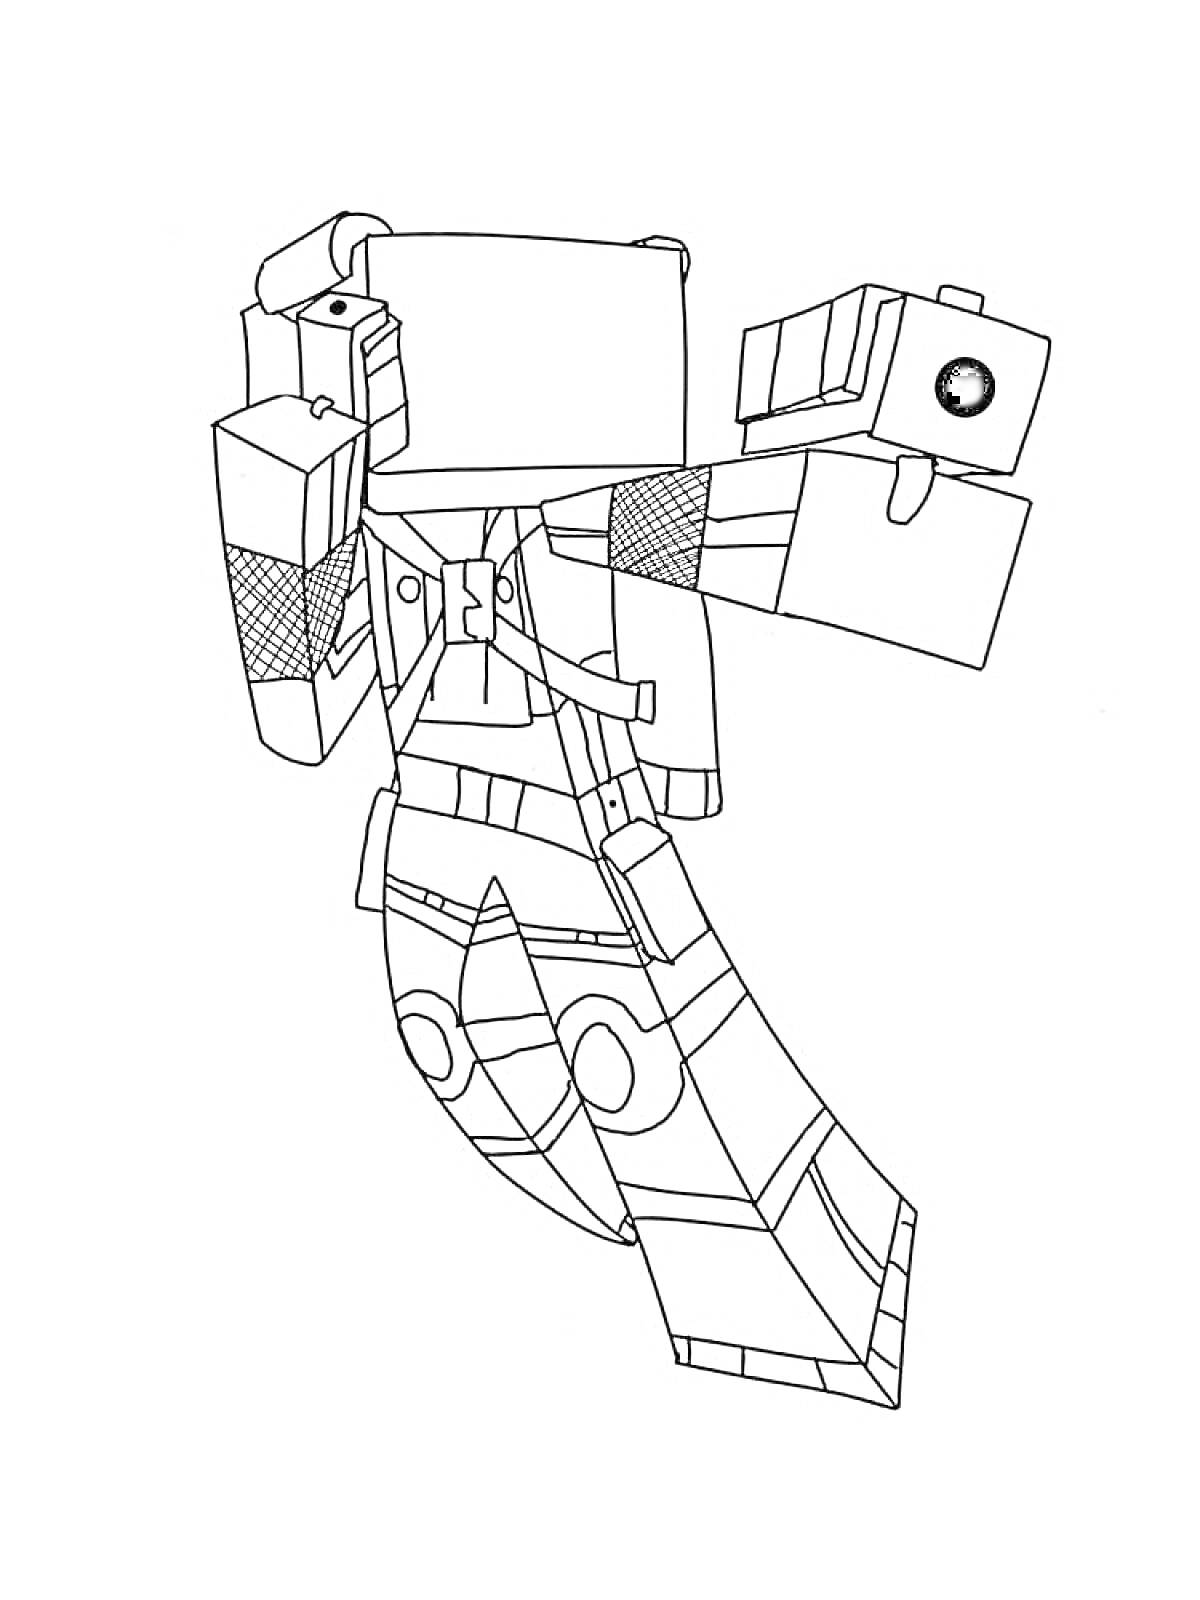 Робот-персонаж Roblox с крупными руками и ногами, поднятыми в динамичной позе